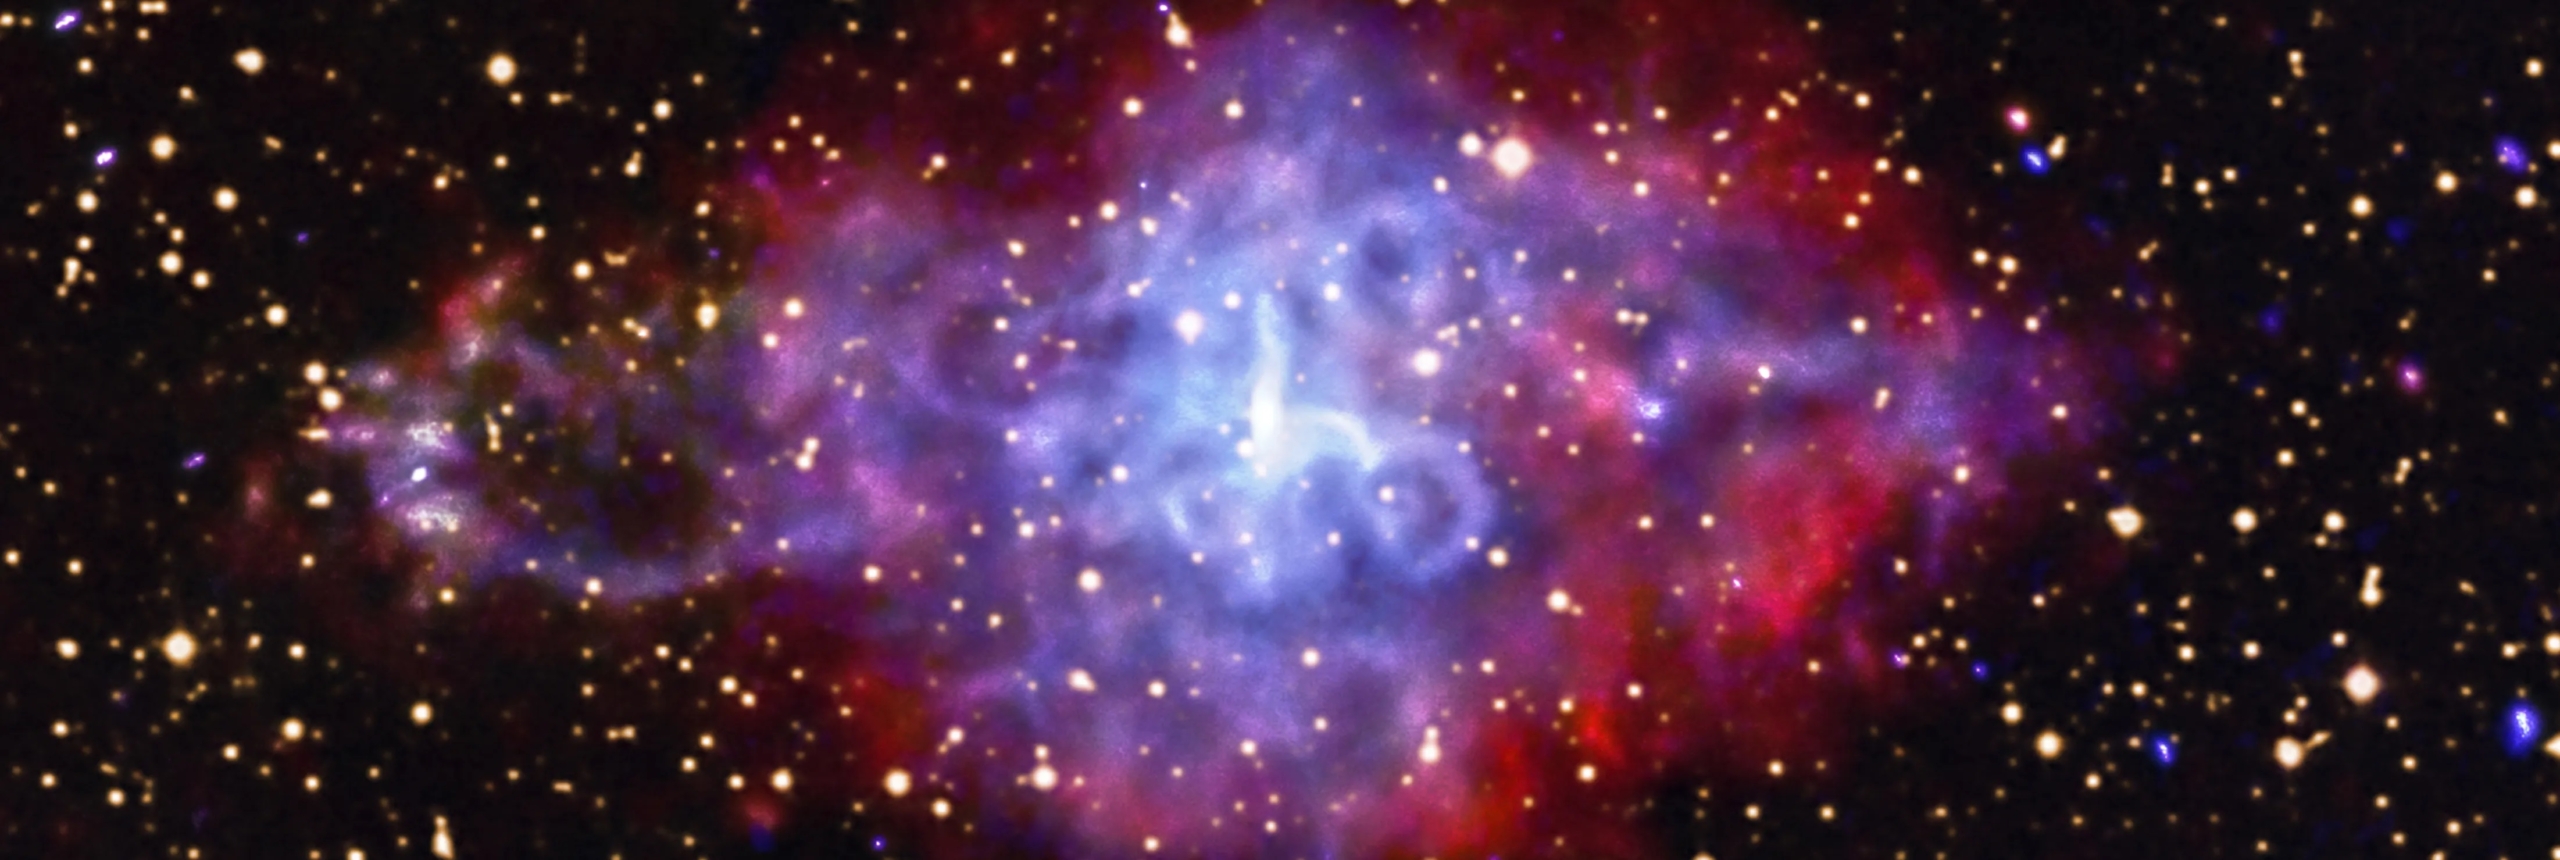 Tàn dư siêu tân tinh 3C 58. (Ảnh: NASA)